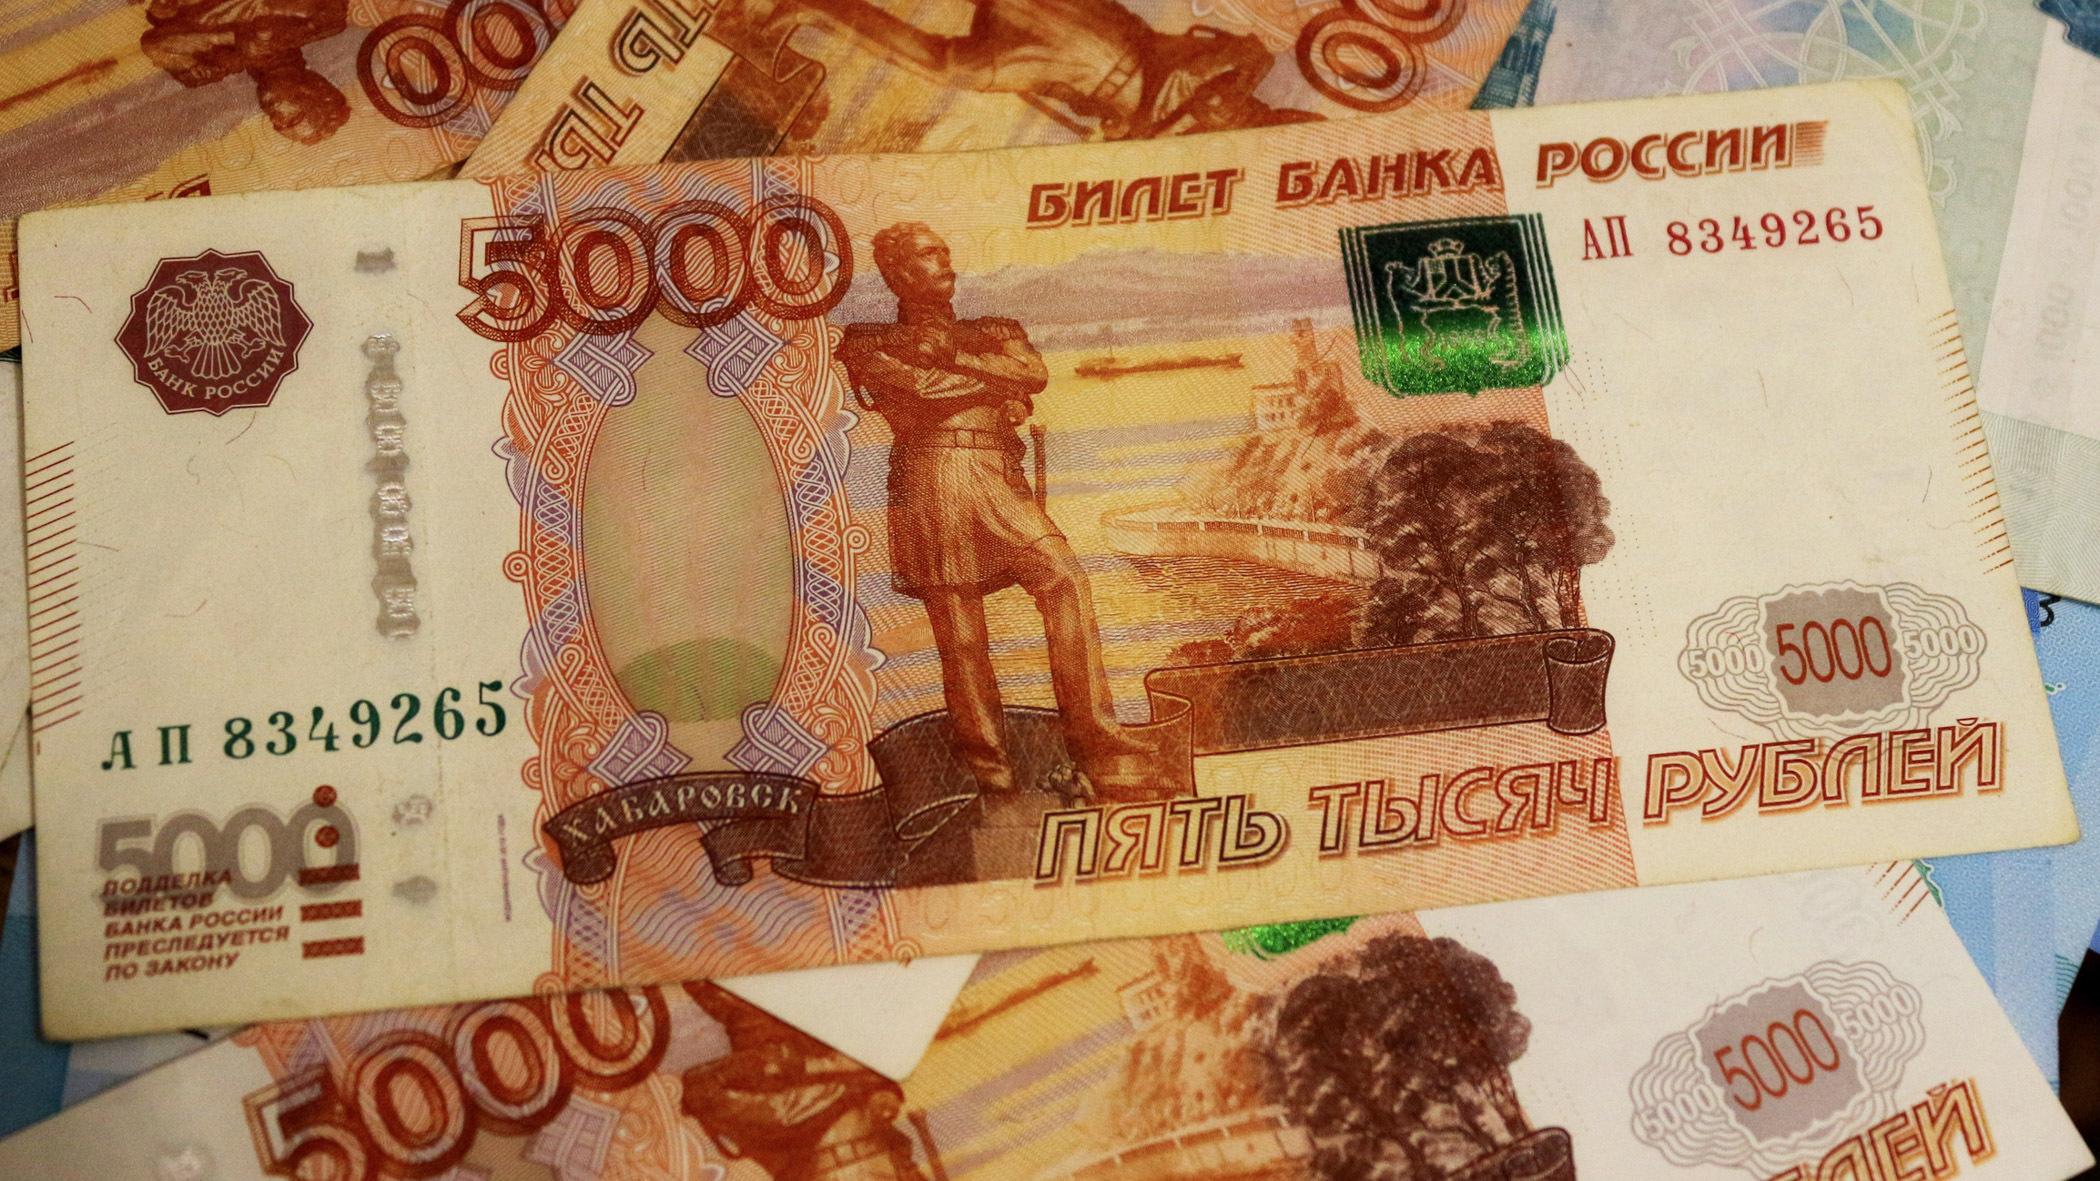 Тюменец хотел встретиться с девушкой, но потерял больше 60 тысяч рублей